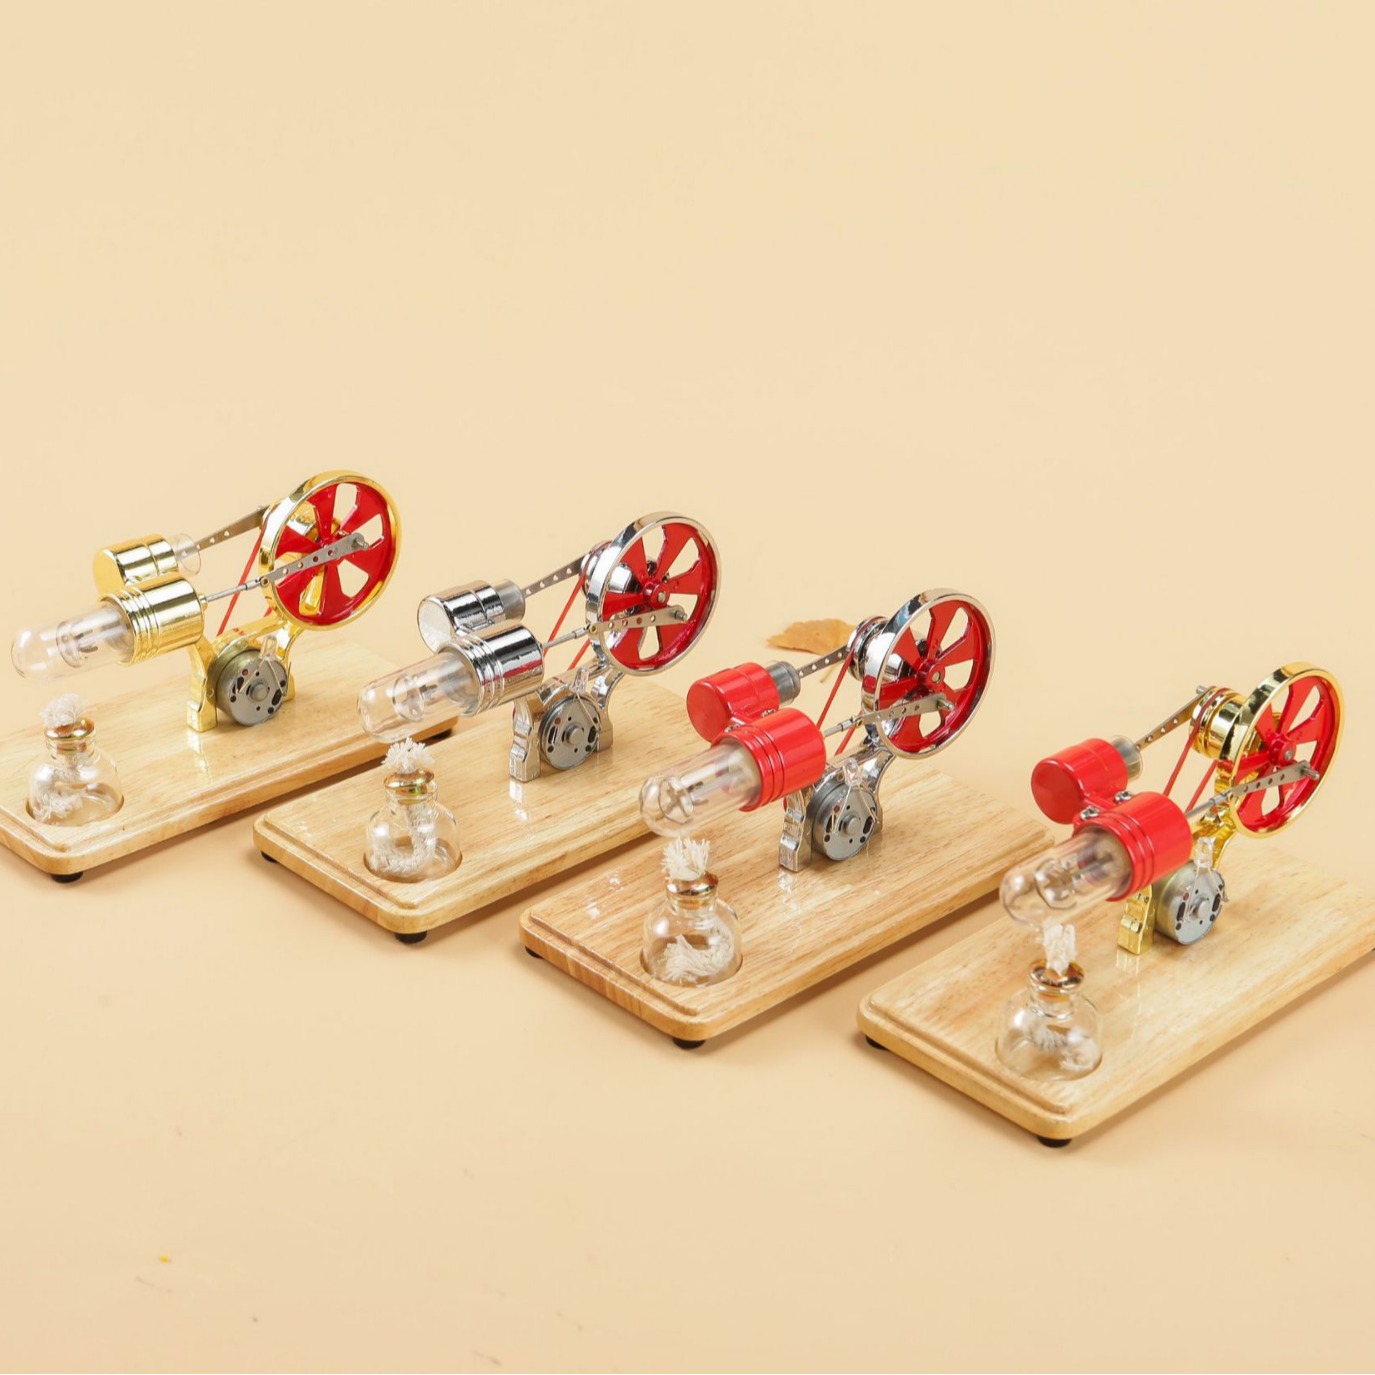 四色斯特林发动机发电机模型科学物理实验科教玩具